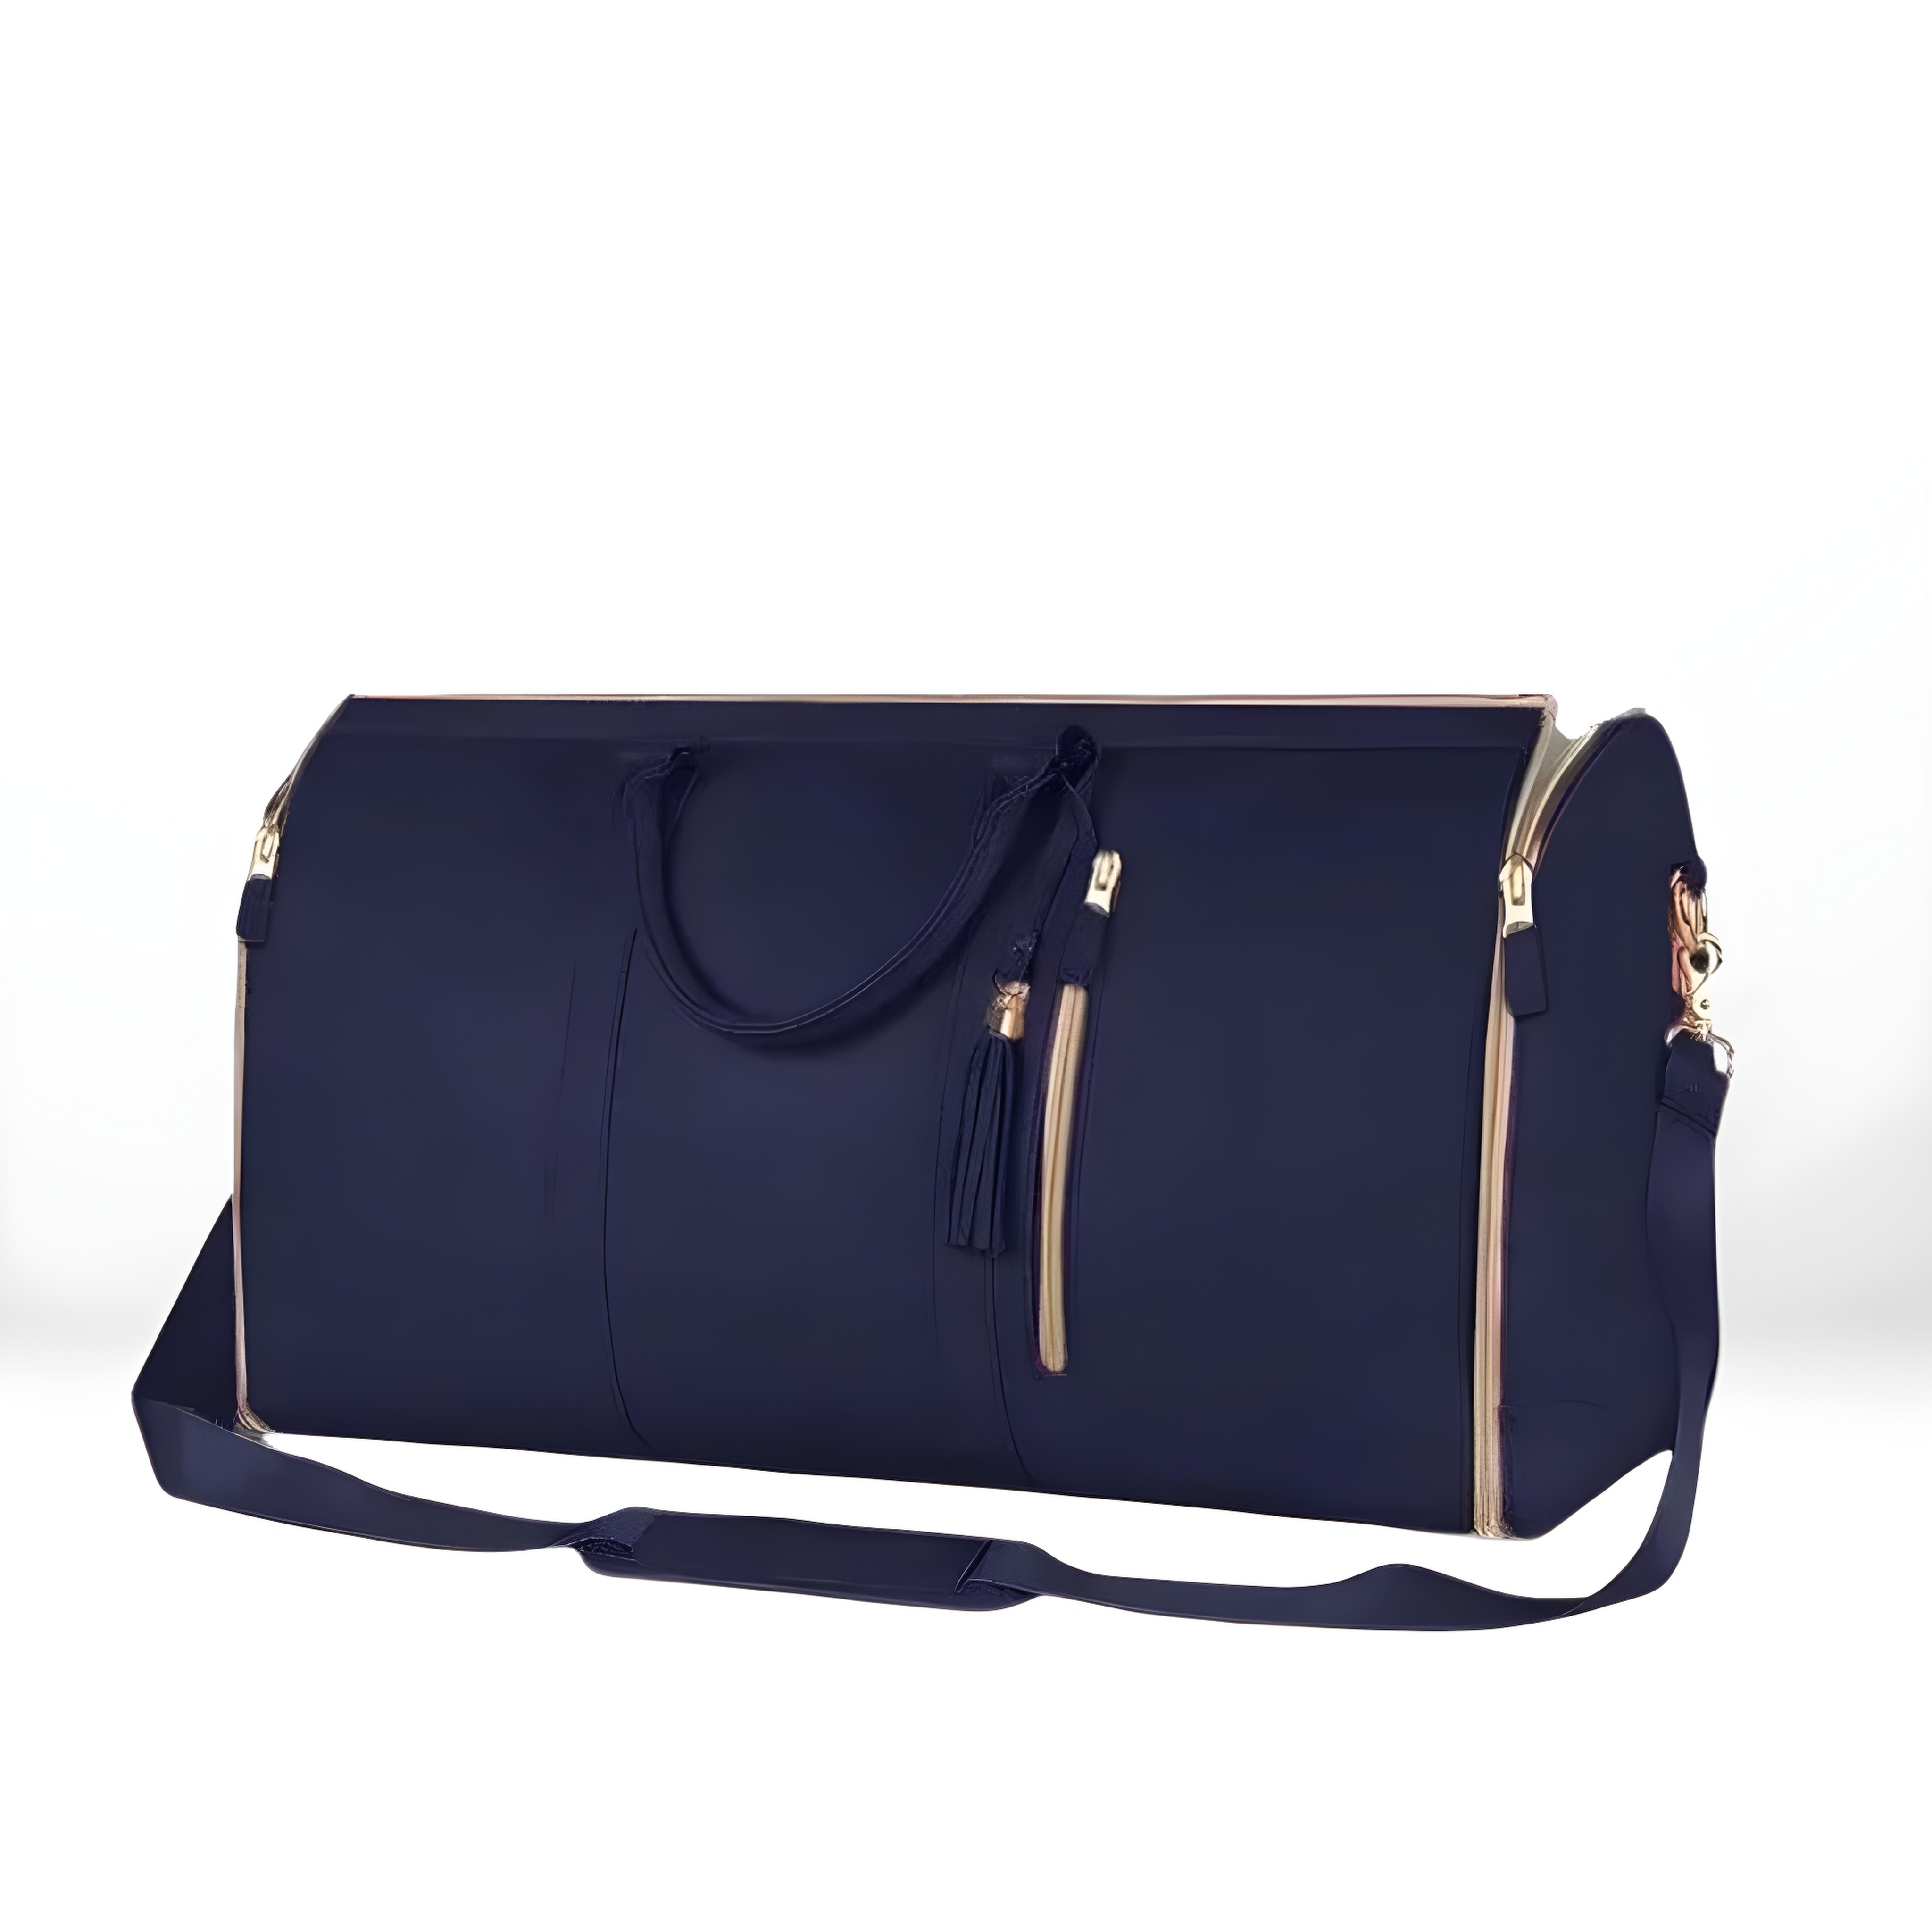 KULBAG™ Foldable Travel Bag